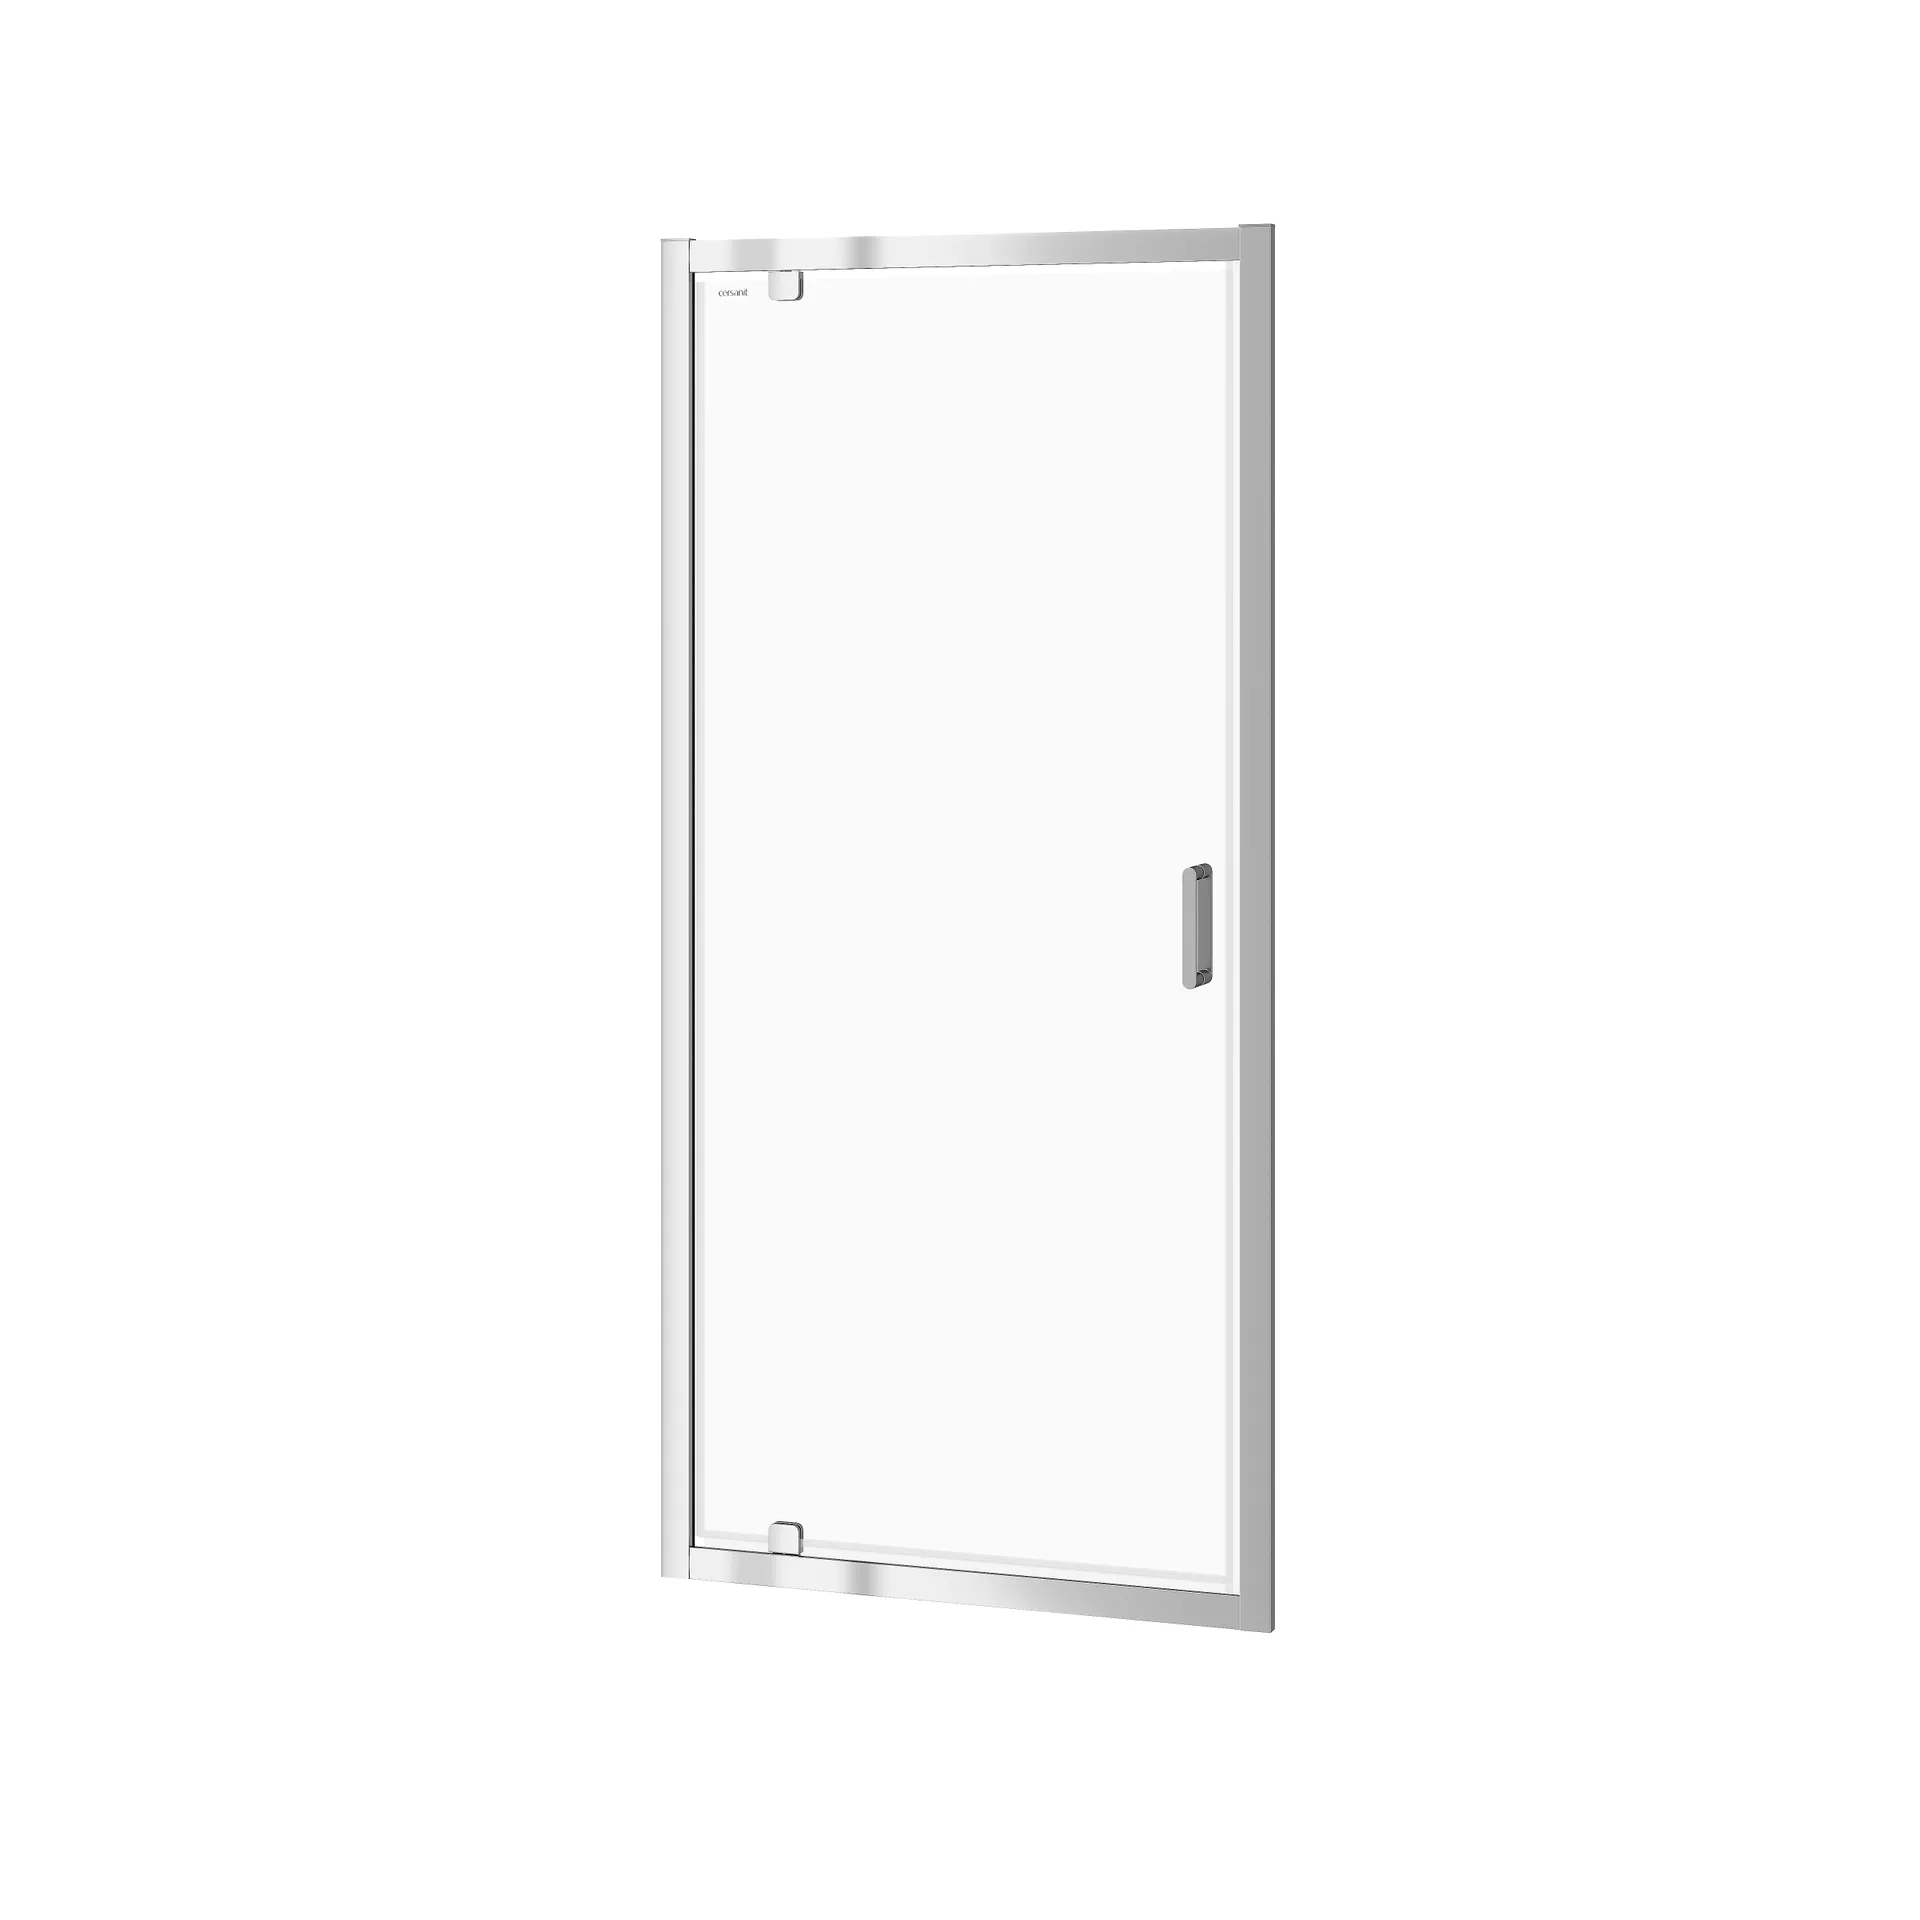 Drzwi prysznicowe Cersanit Arteco 90X190 chrom transparentne S157-008